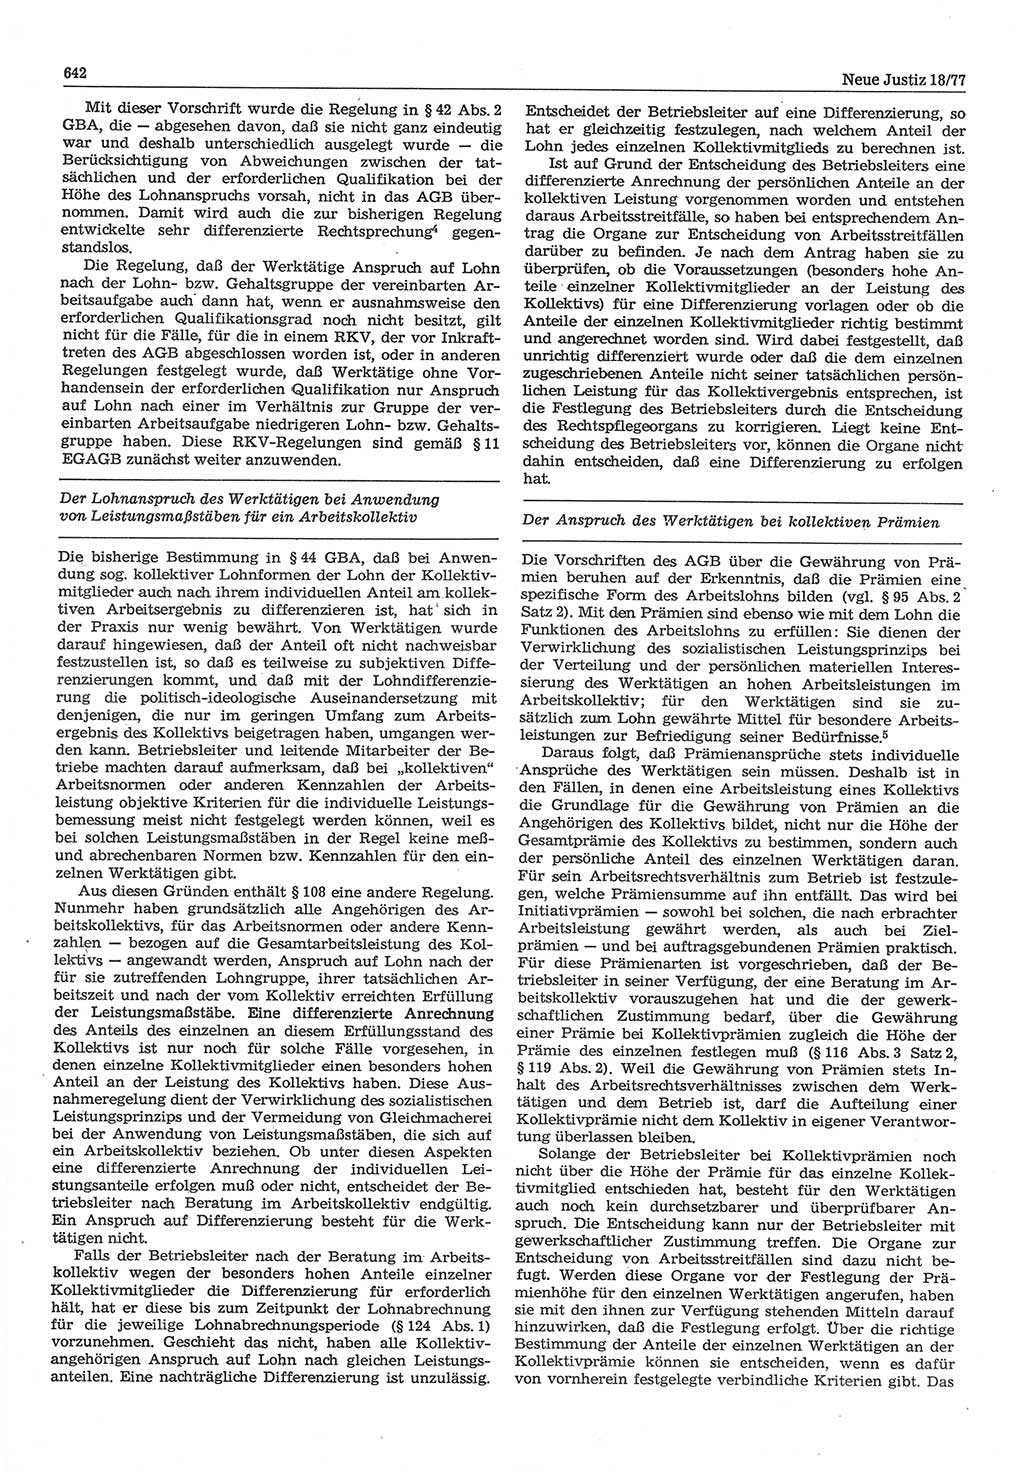 Neue Justiz (NJ), Zeitschrift für Recht und Rechtswissenschaft-Zeitschrift, sozialistisches Recht und Gesetzlichkeit, 31. Jahrgang 1977, Seite 642 (NJ DDR 1977, S. 642)